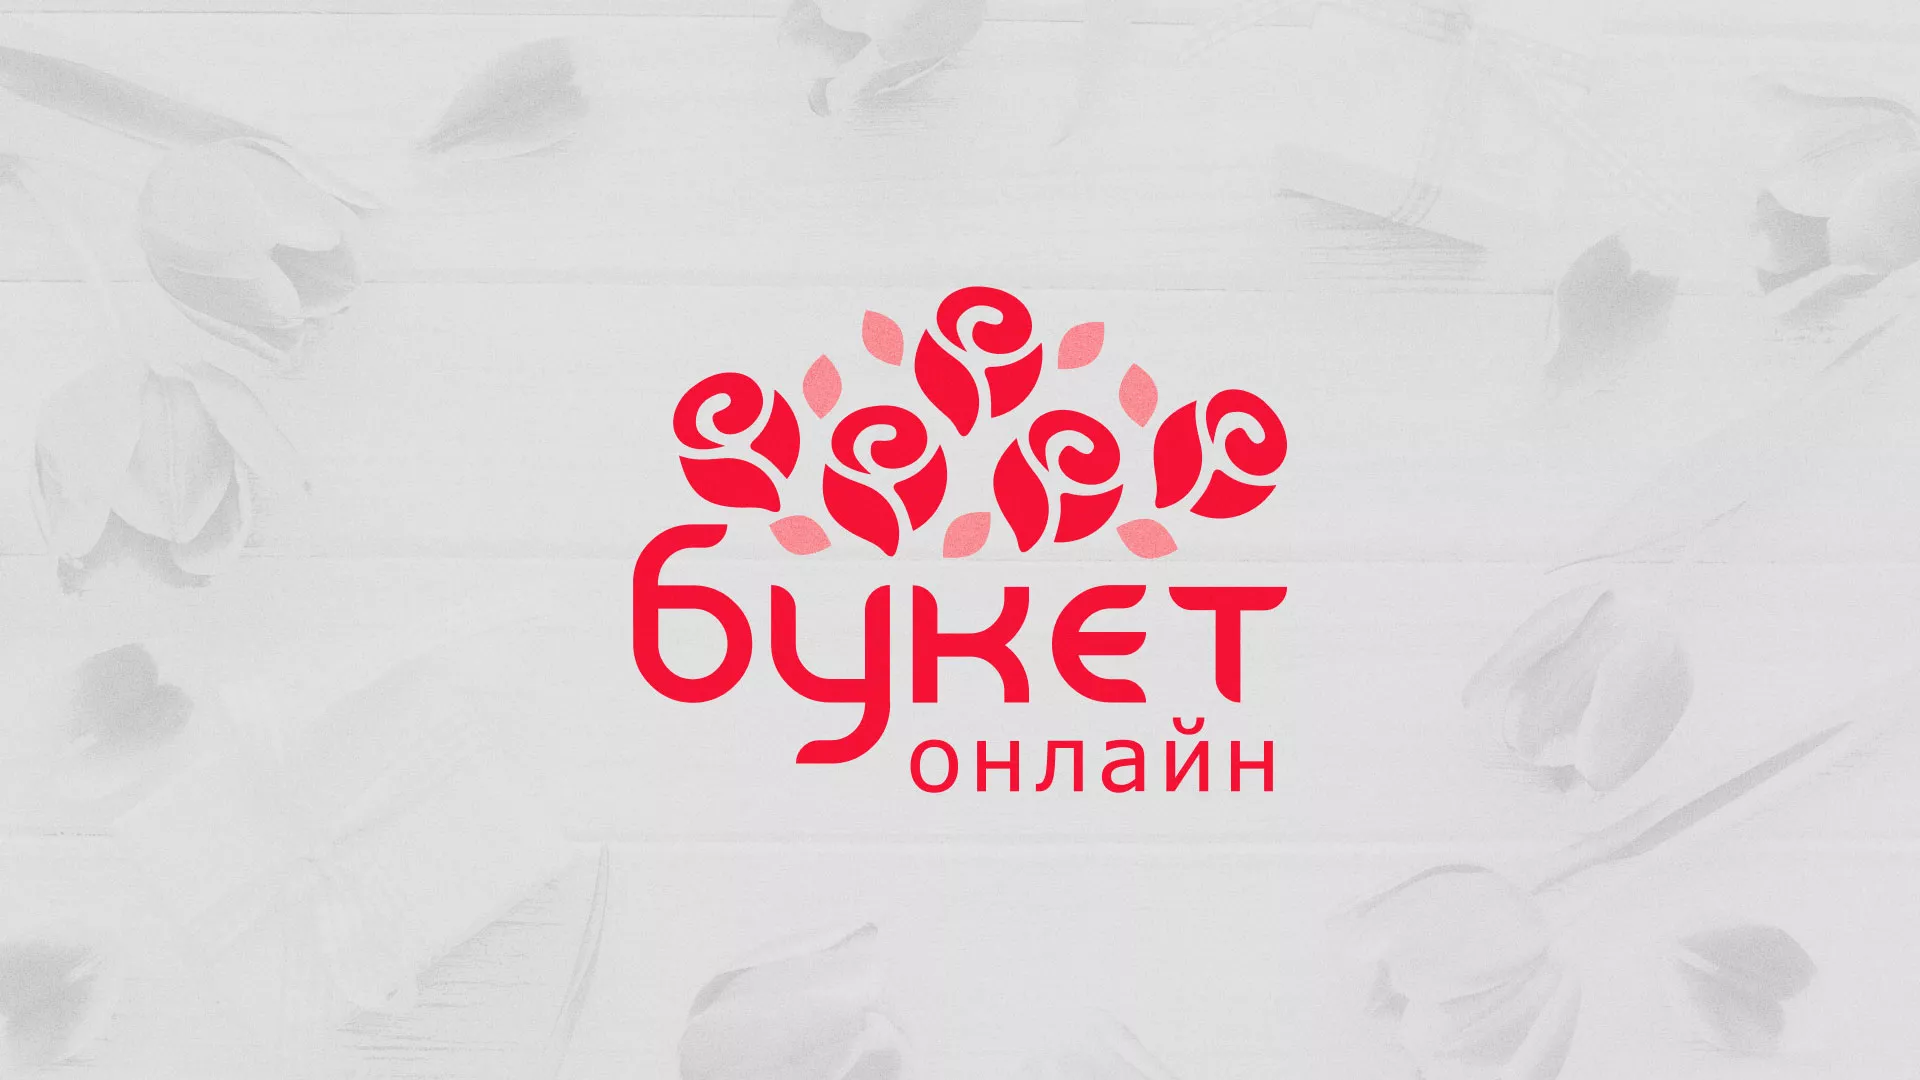 Создание интернет-магазина «Букет-онлайн» по цветам в Казани